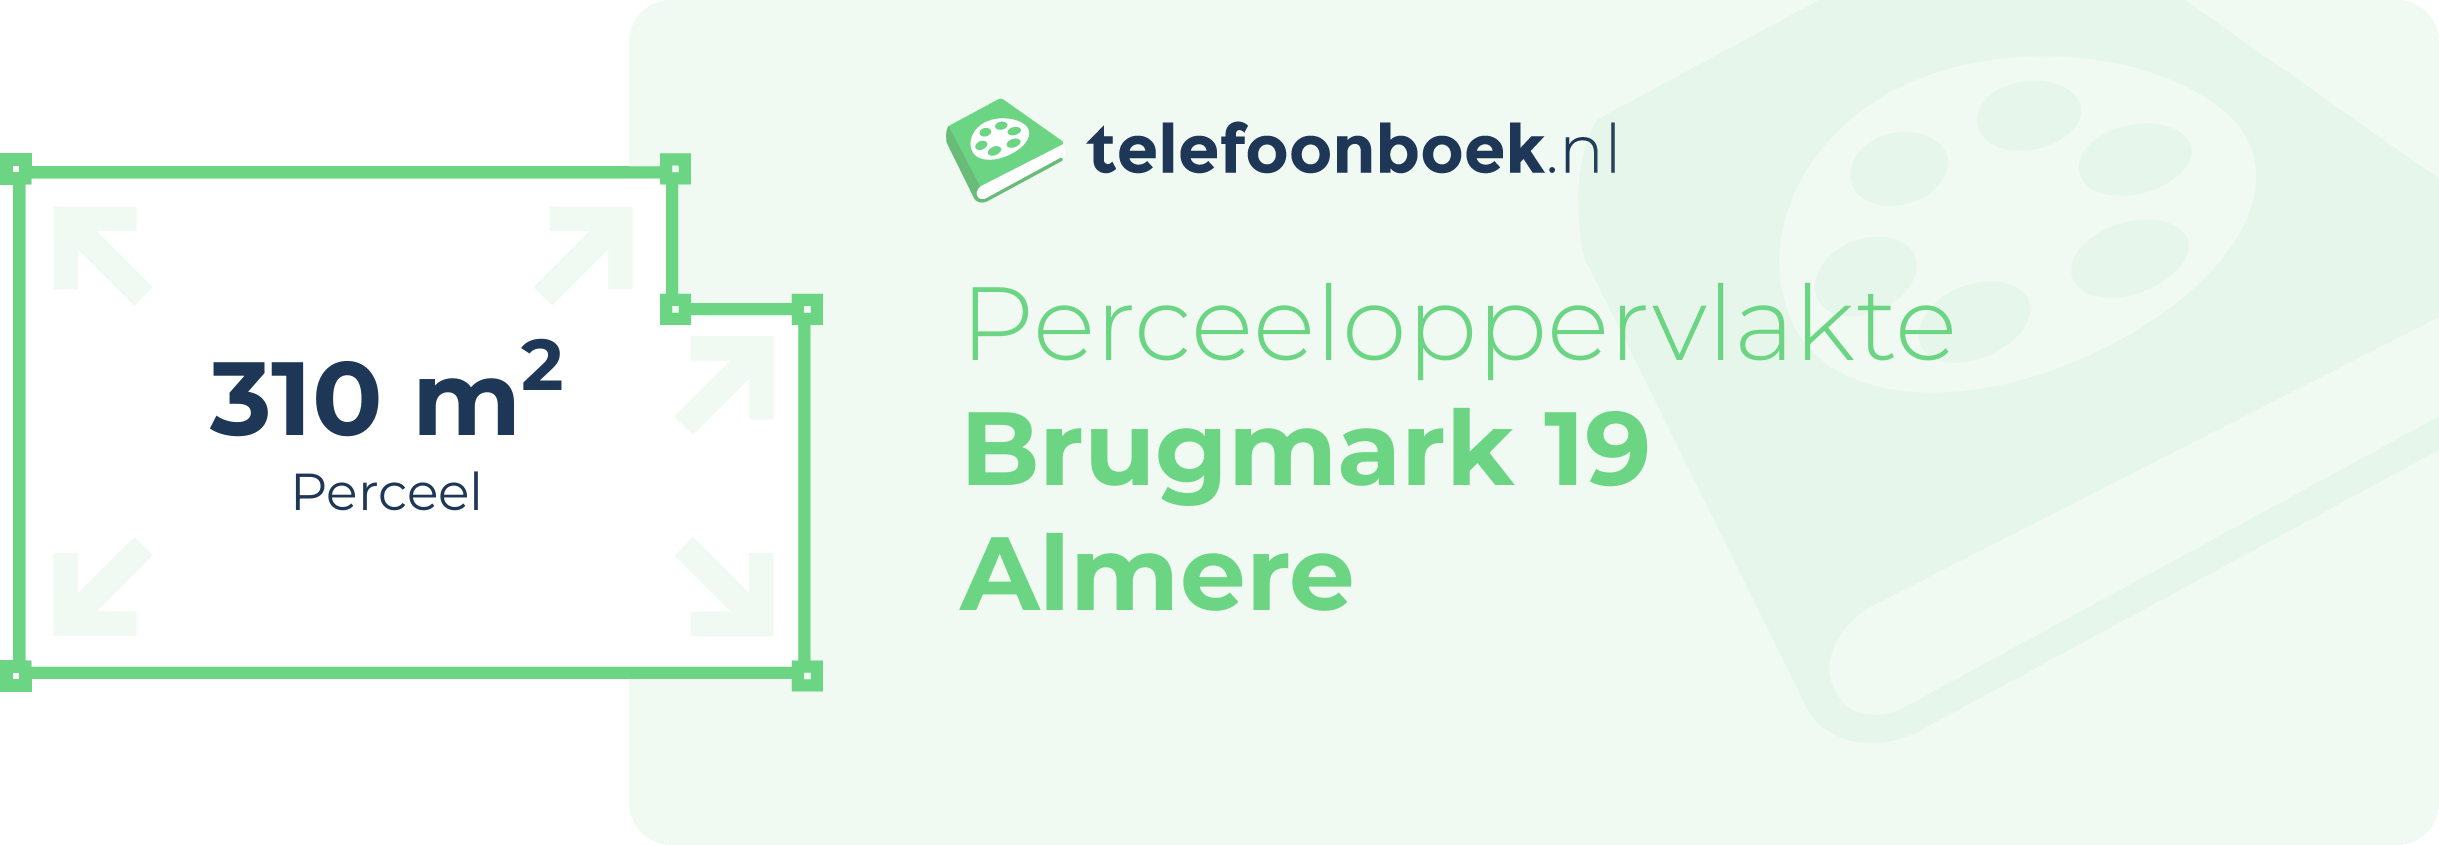 Perceeloppervlakte Brugmark 19 Almere